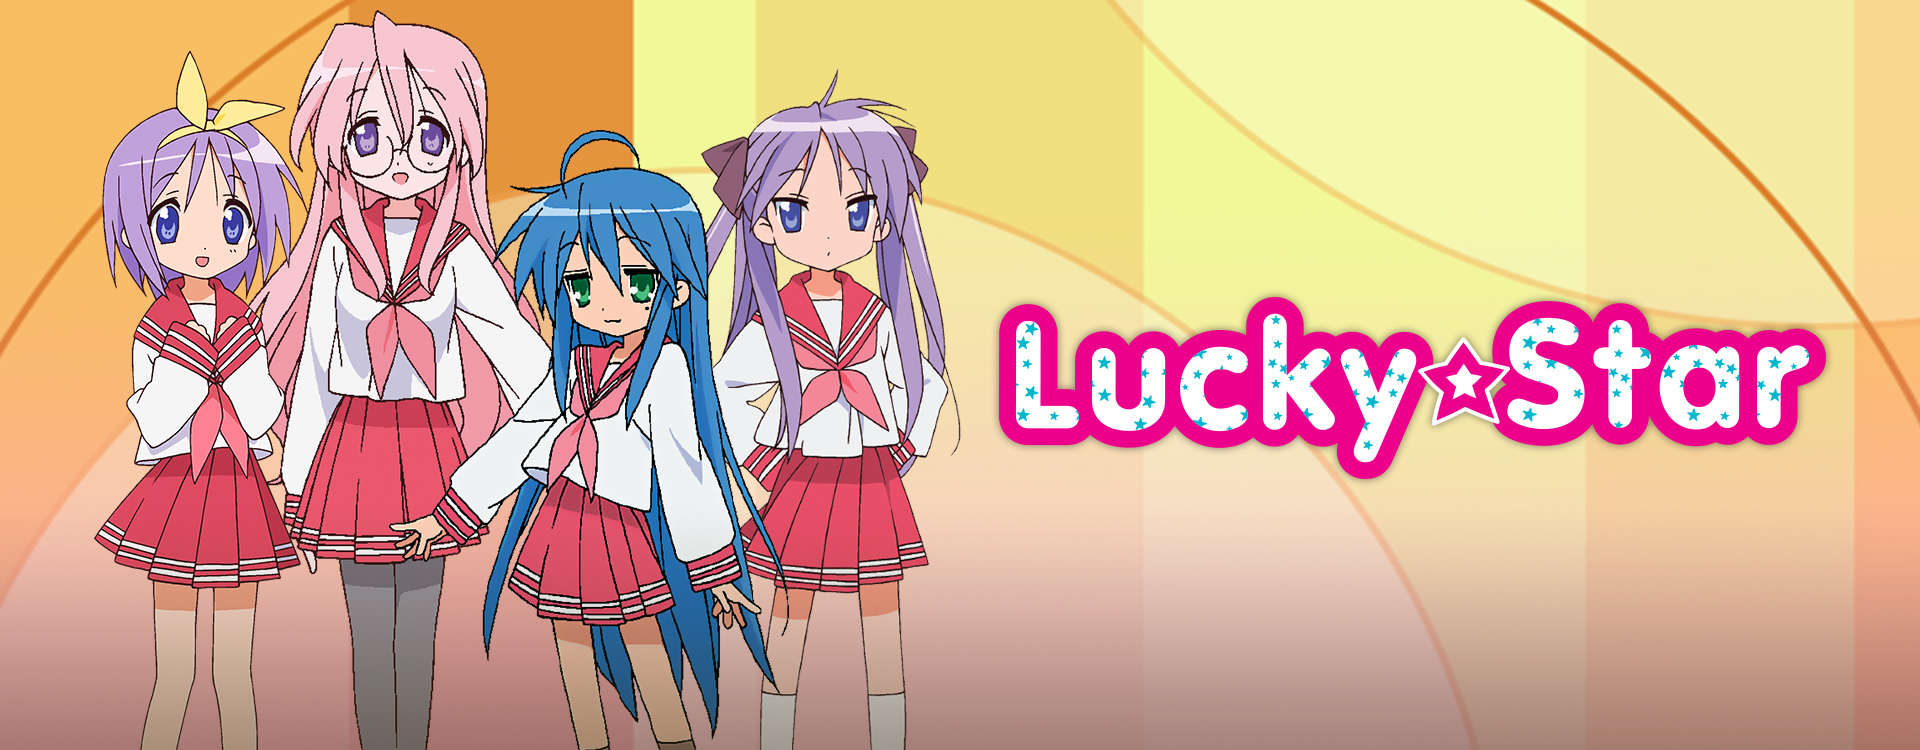 Lucky☆Star/#1305586 | Lucky star, Anime, Star character